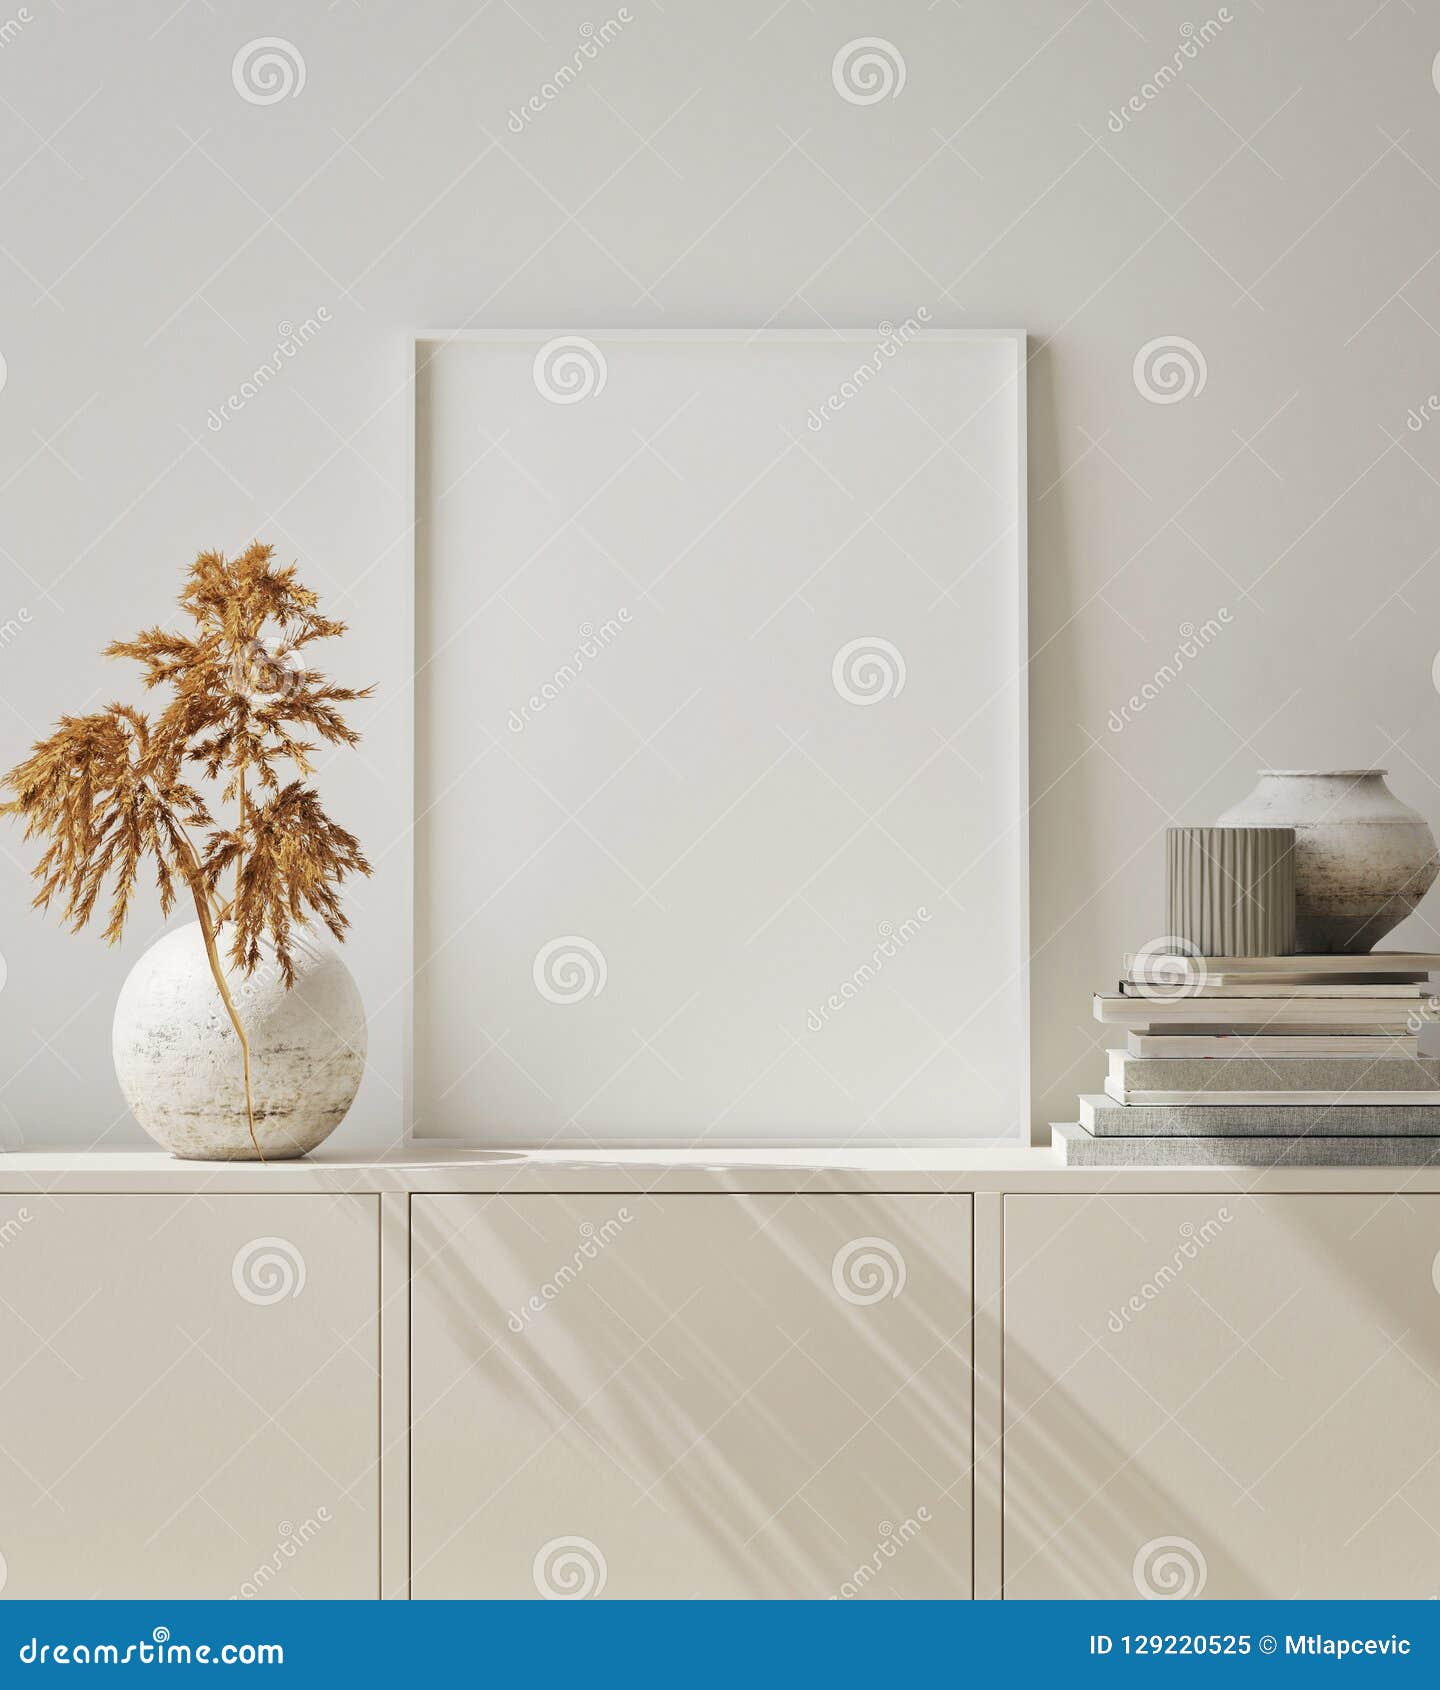 mock up poster frame in hipster interior background, living room,scandinavian style, 3d render, 3d 